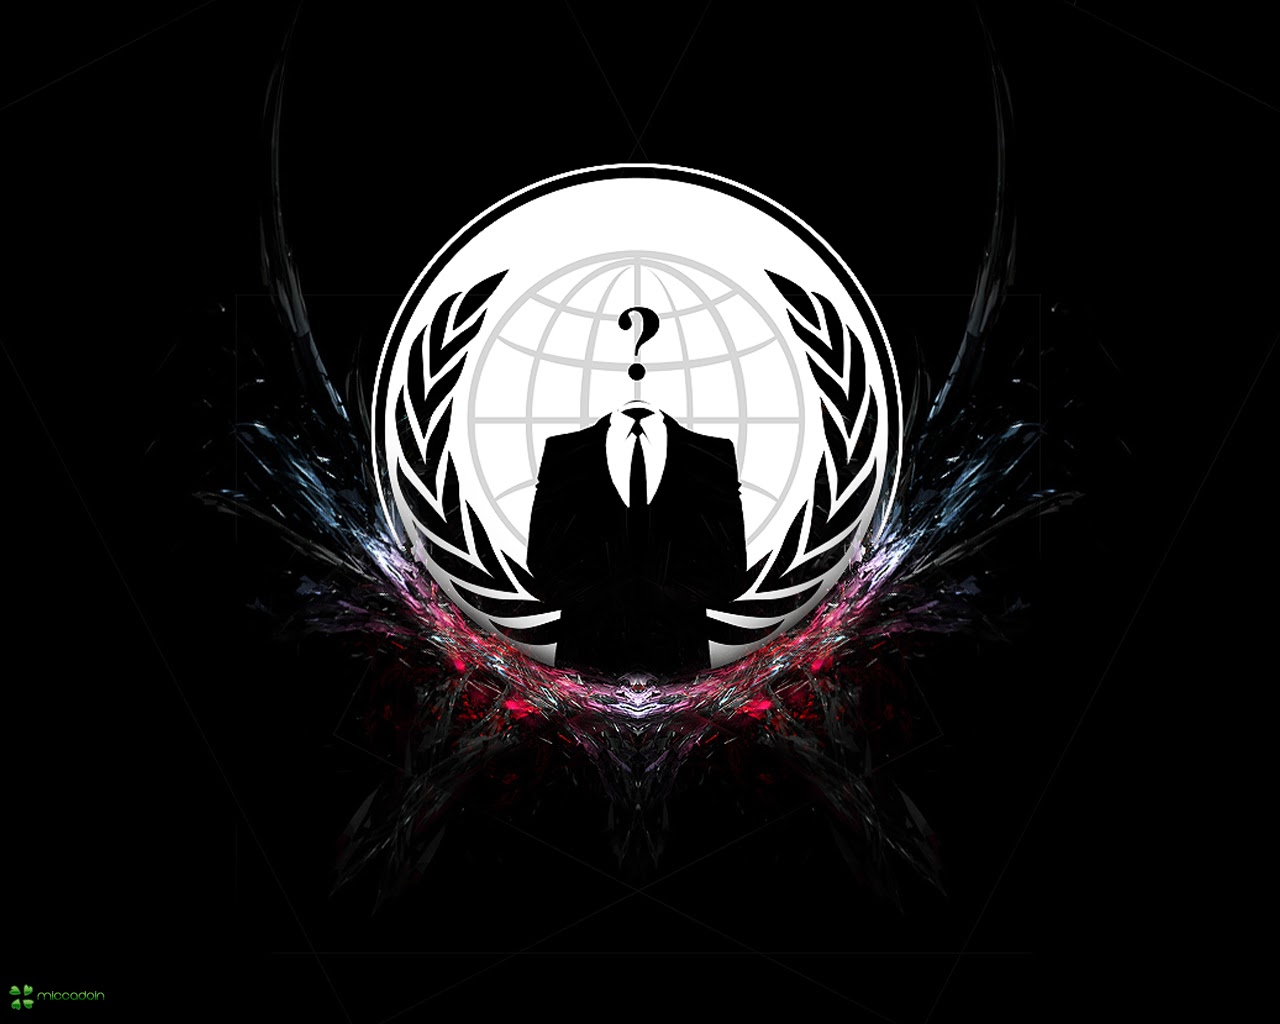 Foto Desain Logo dan Baju Hacker Anonymous - Foto dan Gambar